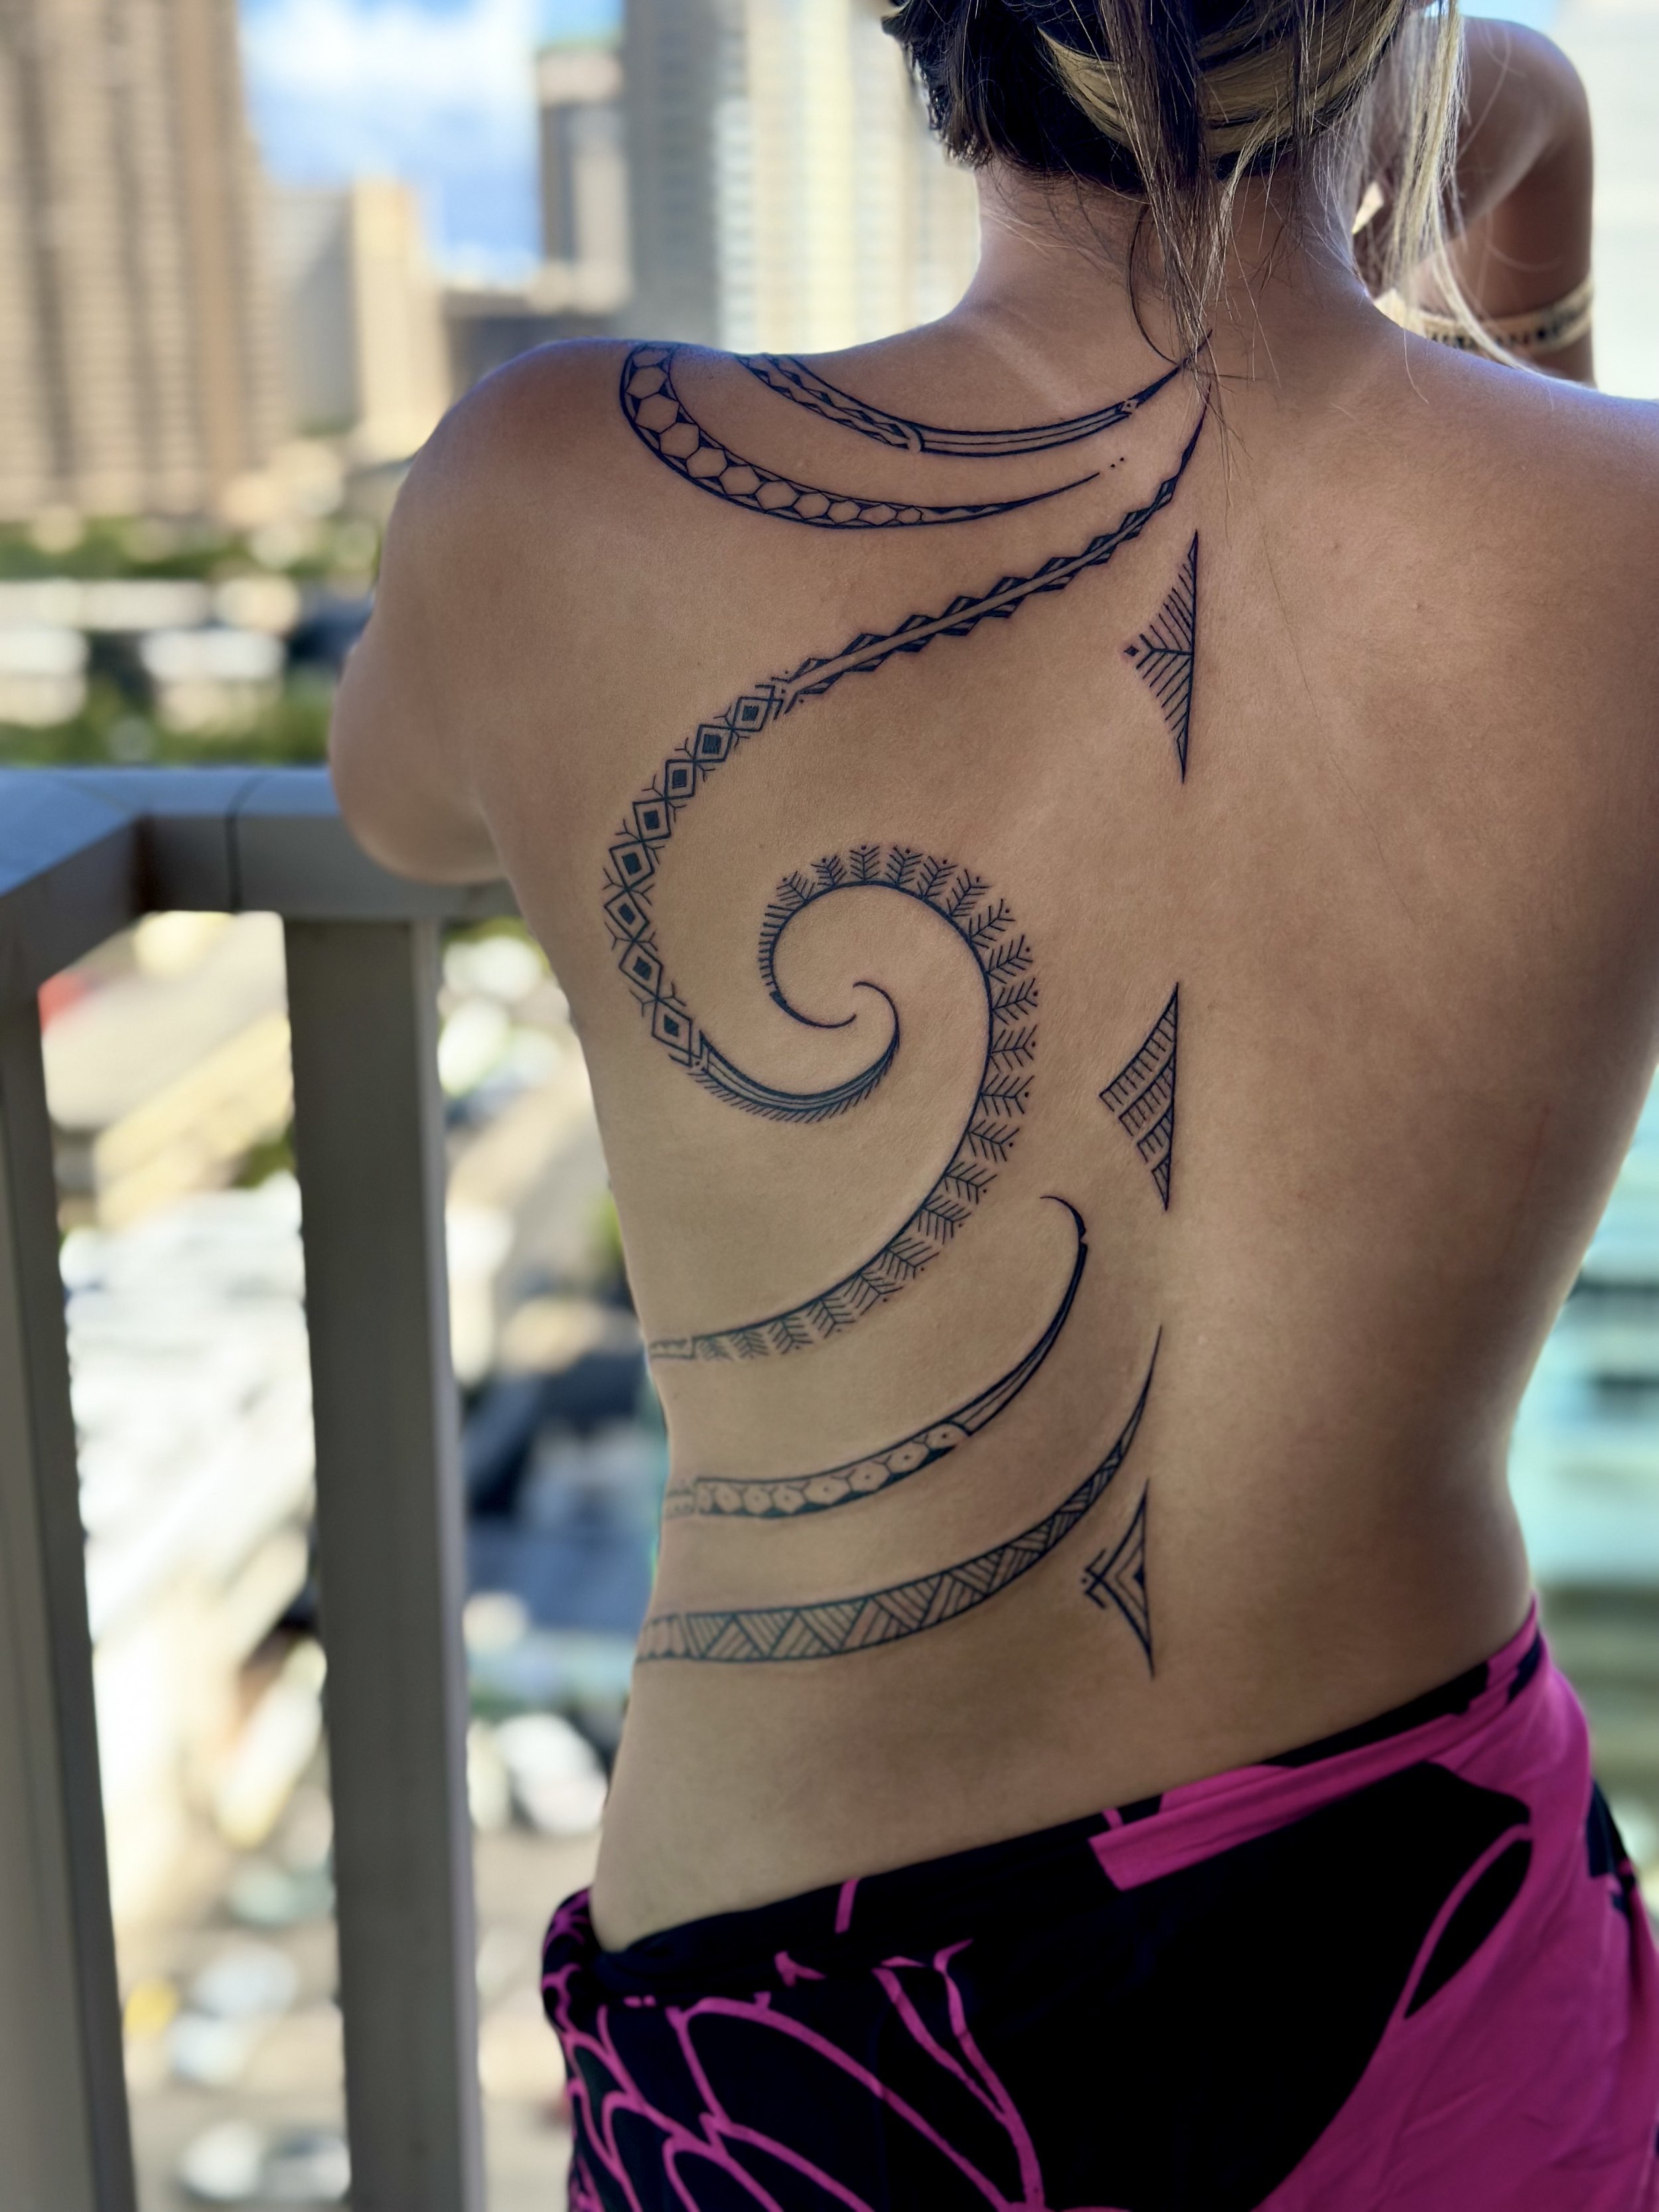 JeffChew Tattoo - Polynesian tattoo. Tattoo artist:-@jeffchewtattoo Inbox  @jeffchewtattoo @kunpeng_tattoo for tattoo appointment booking. #ink #tattoo  #polynesian #polynesiantattoo #maori #maoritattoo #shape #pattern #black  #jeffchewtattoo #malaysiaart ...